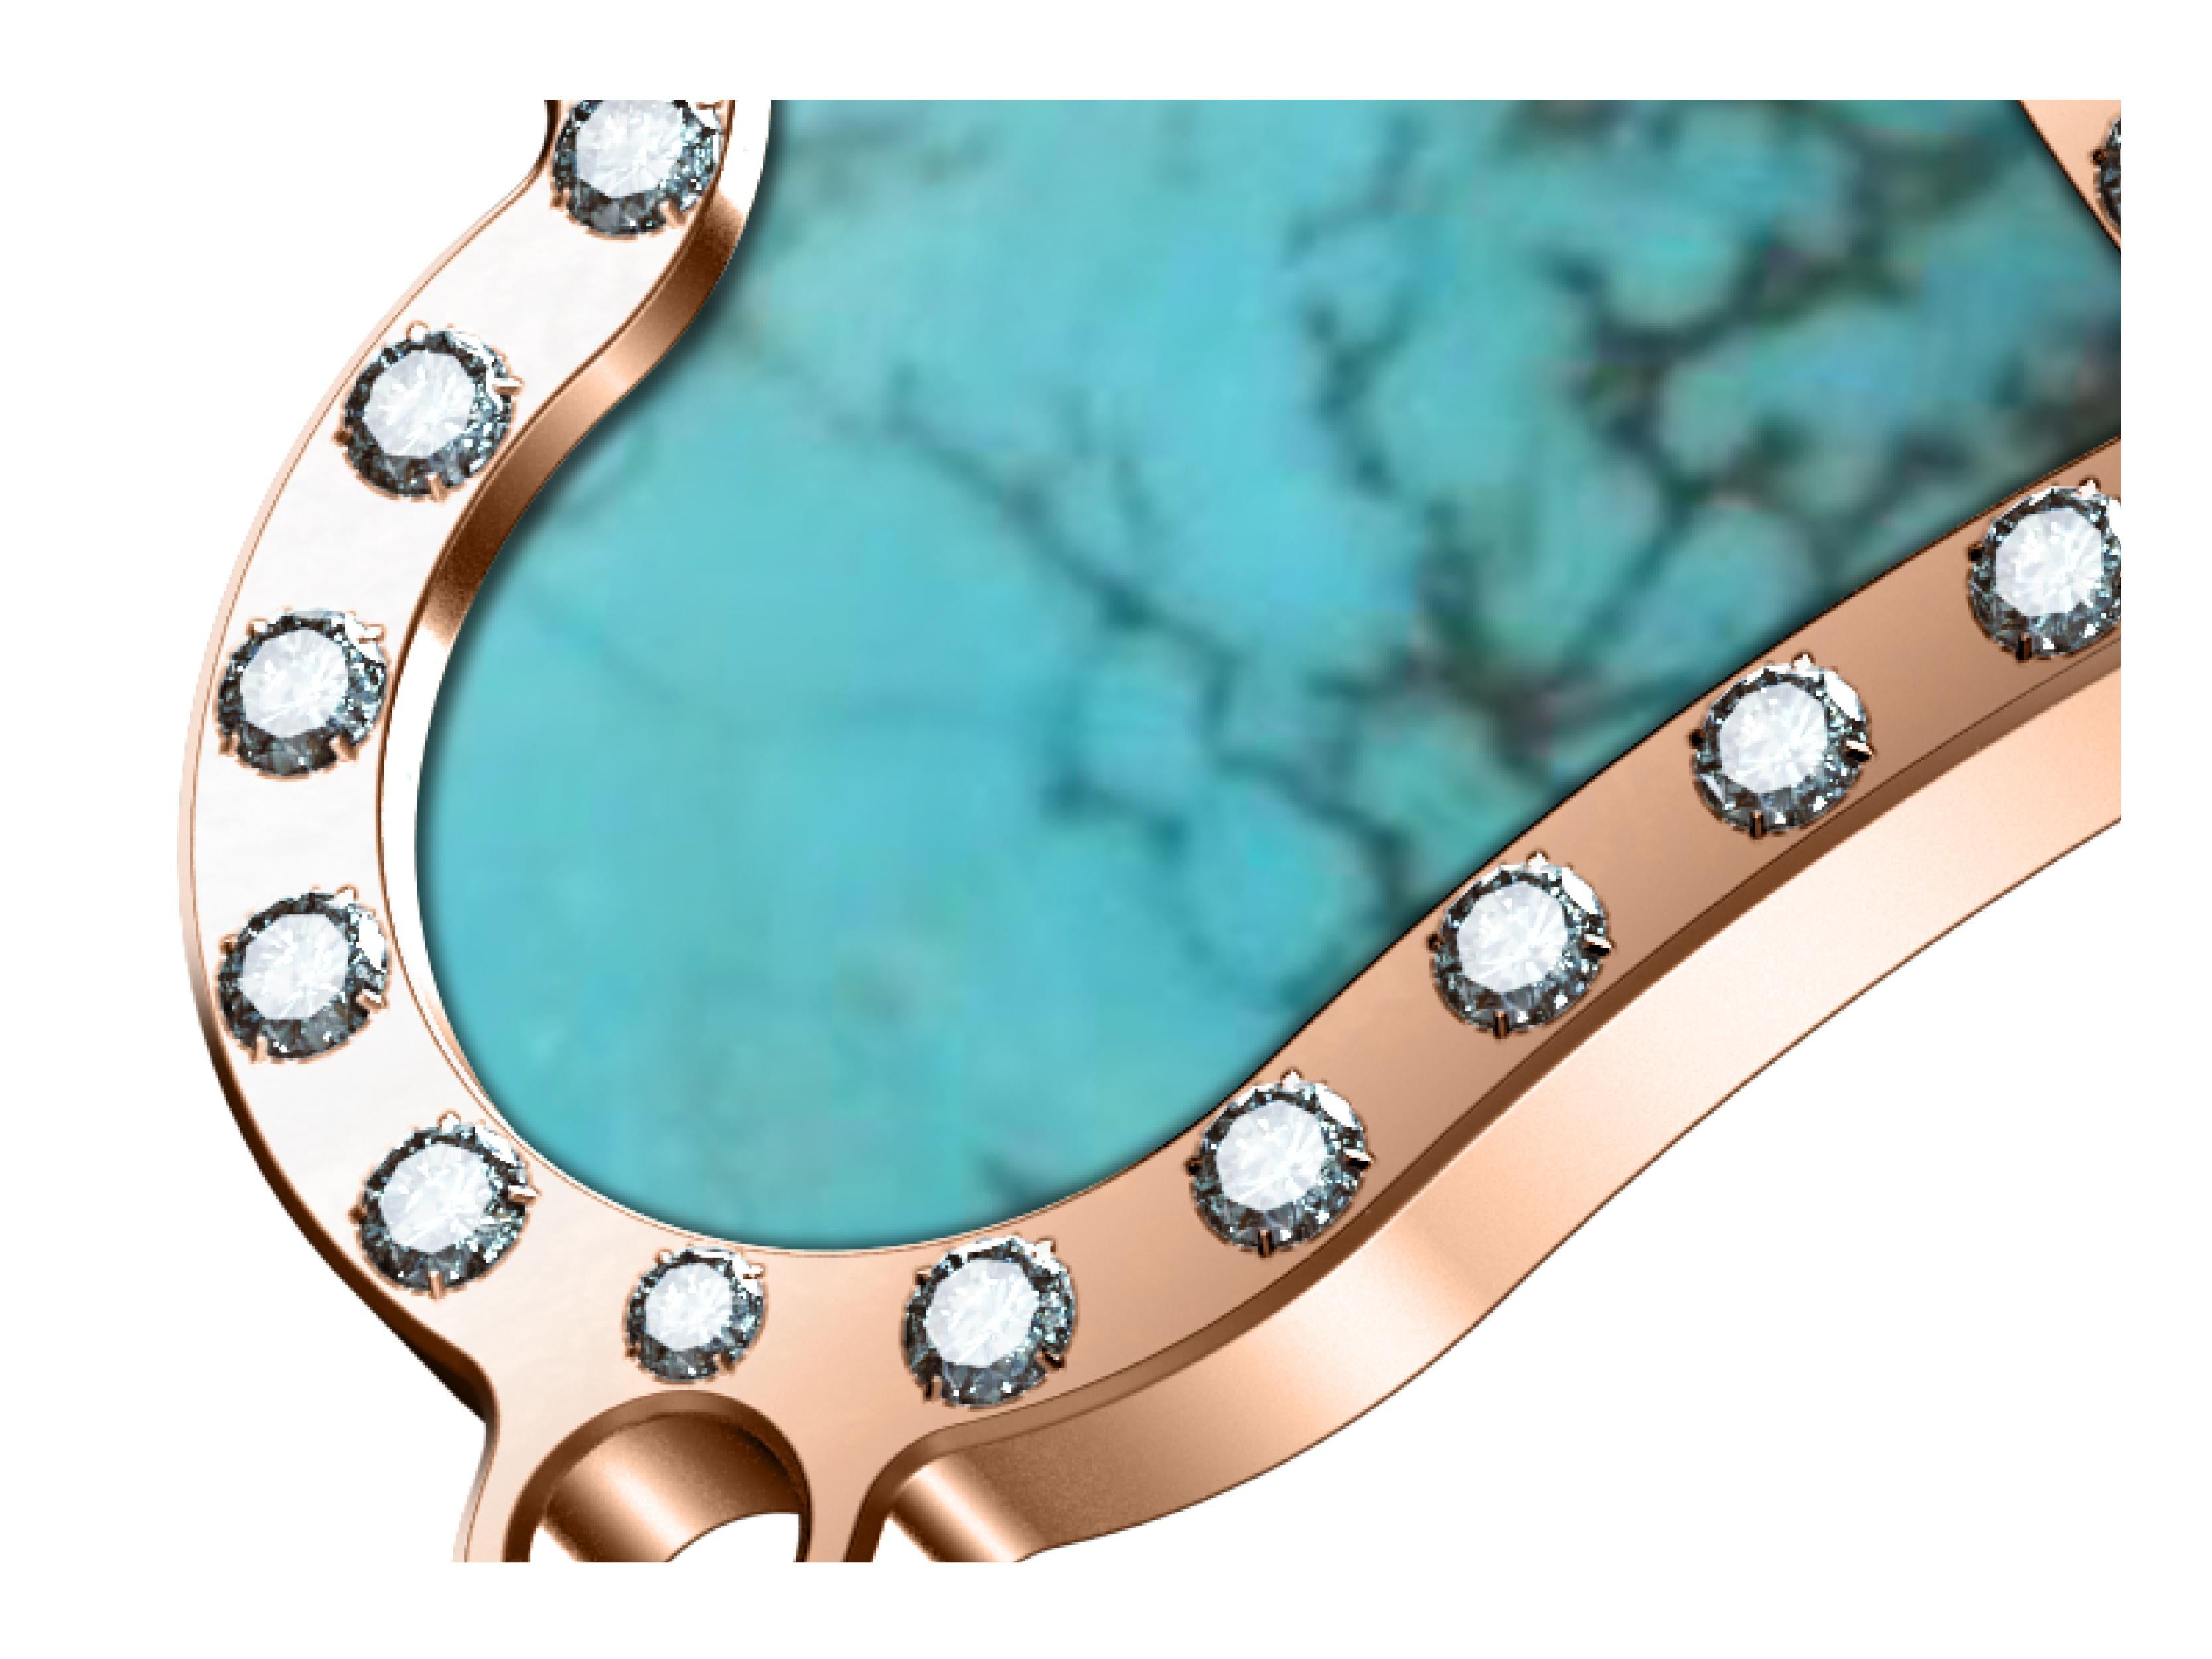 Bracelet B.R.M Luxury Cœur or rose 18K, diamants et  pierre bleue turquoise pour femme.
Le bracelet en forme de cœur aux courbes précieuses est l'expression d'un amour inaltérable. Or rose
18K, diamants, pierres décoratives, avec chaîne forçat